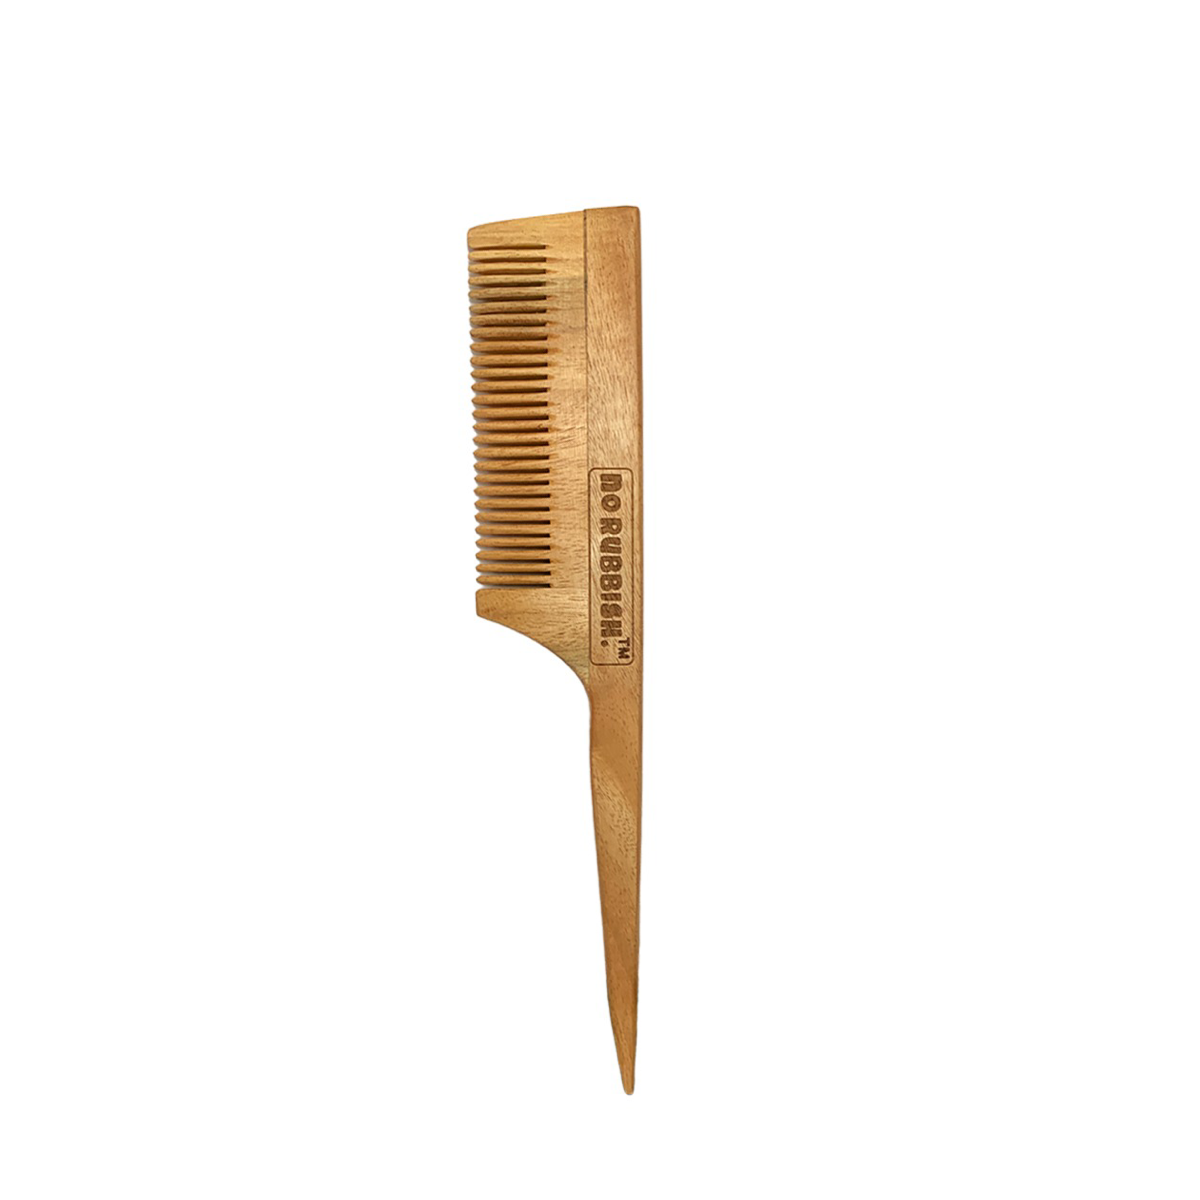 Neem Wood Comb (Pack of 1)